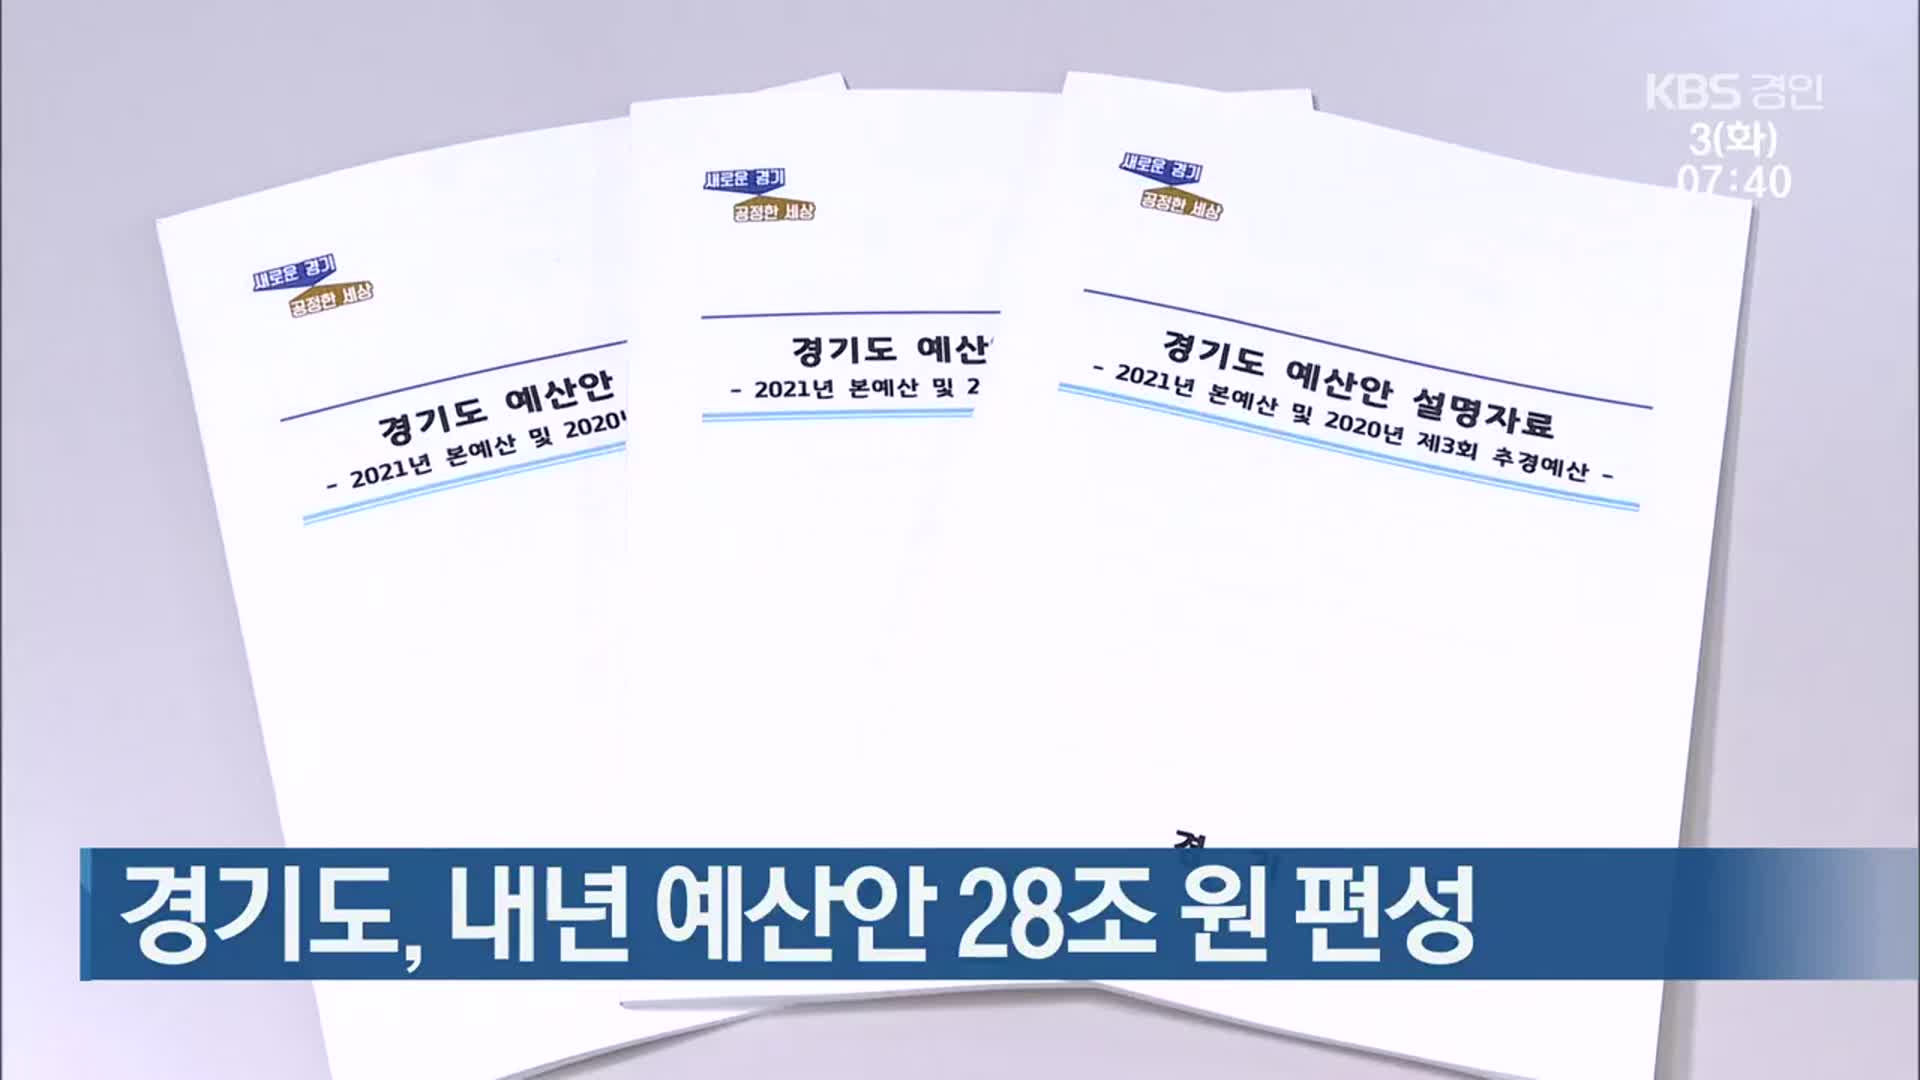 경기도, 내년 예산안 28조 원 편성